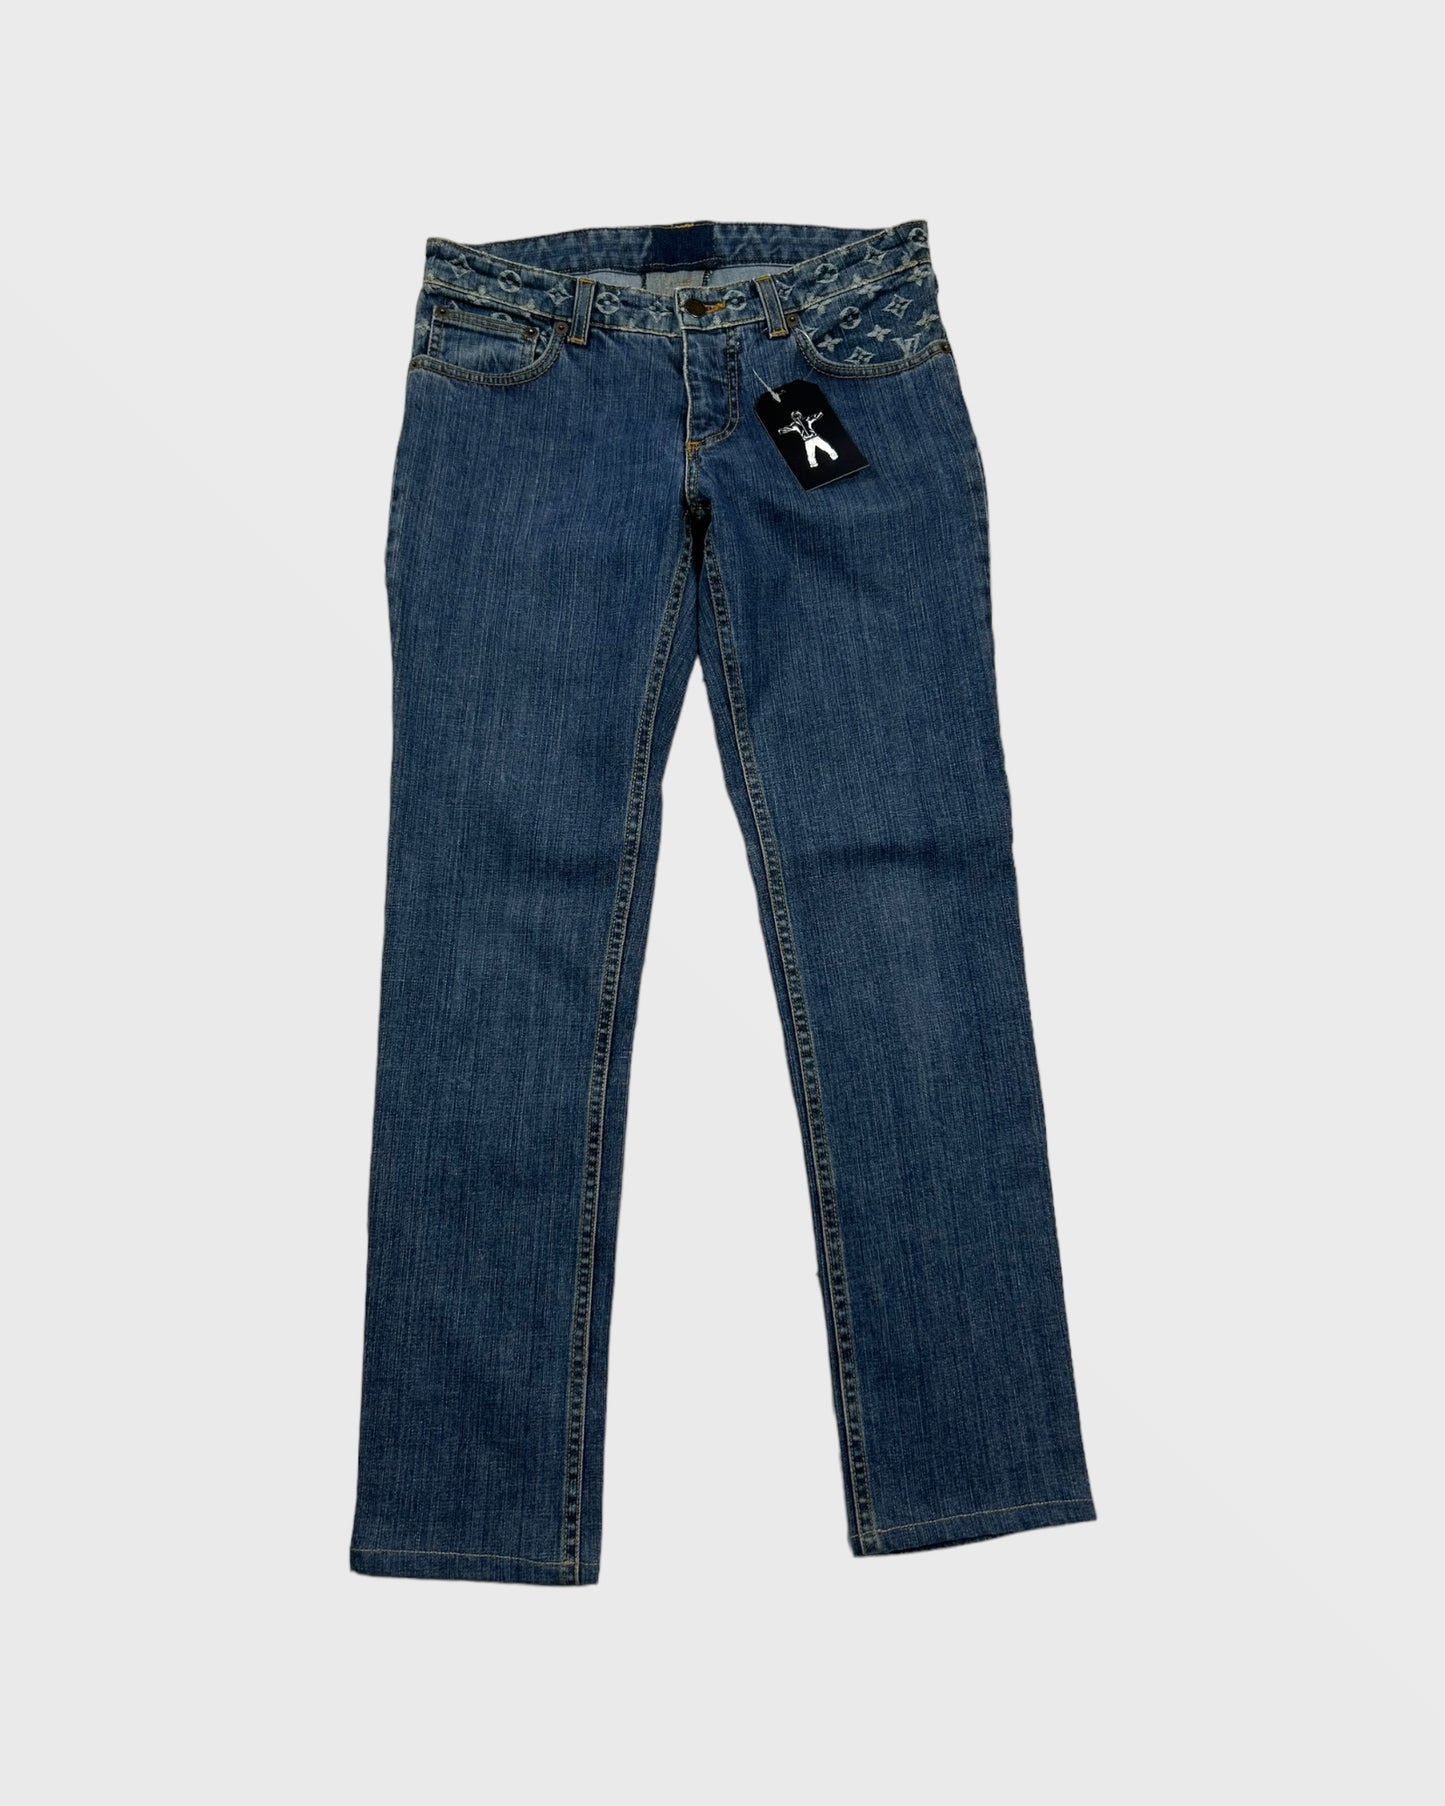 Louis vuitton jeans / pants (S)